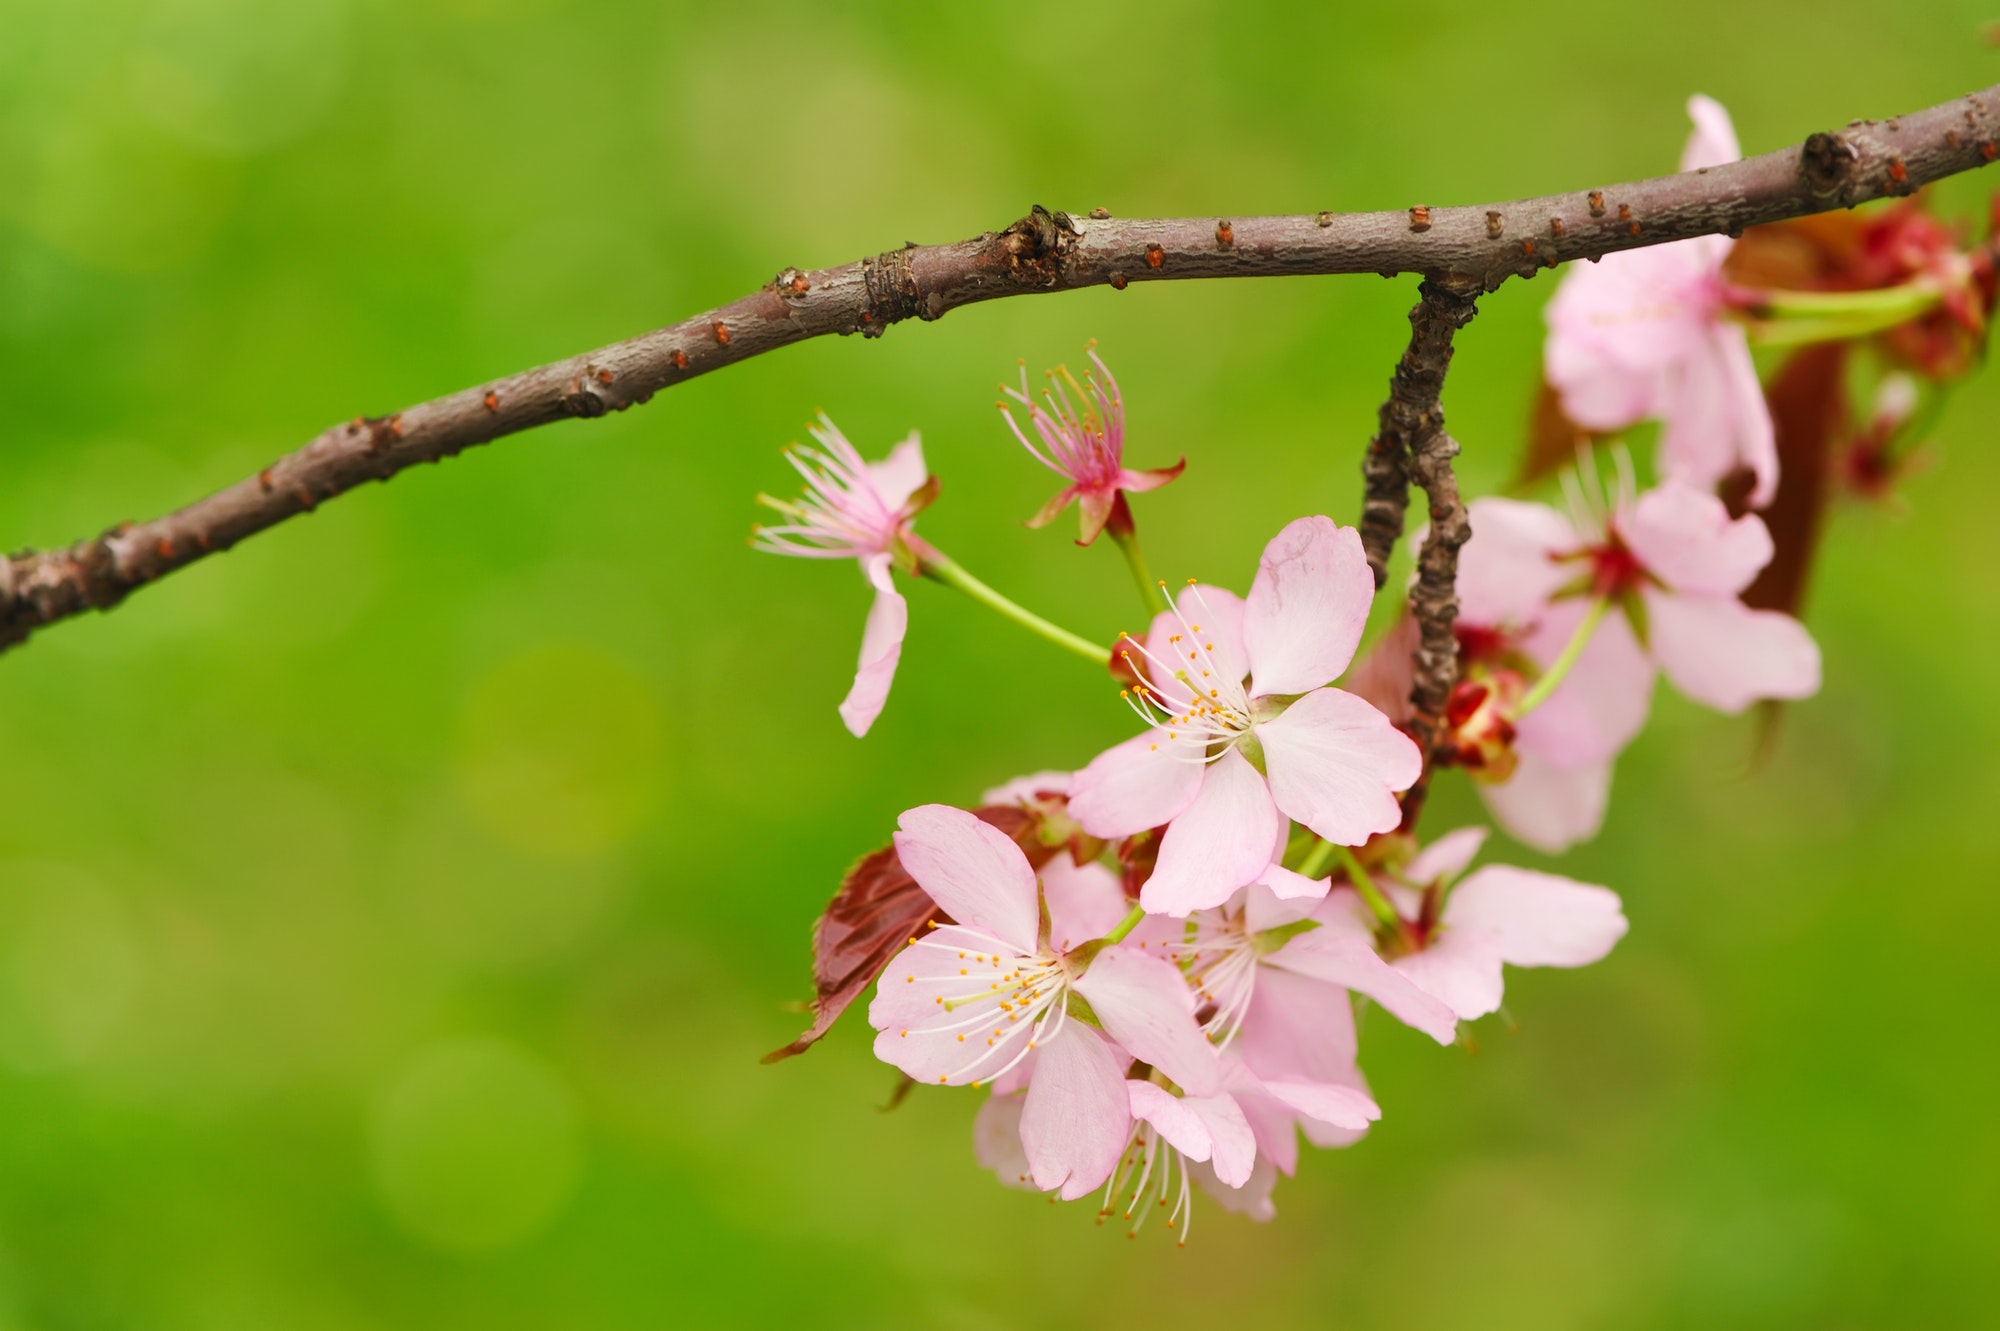 Spring sakura